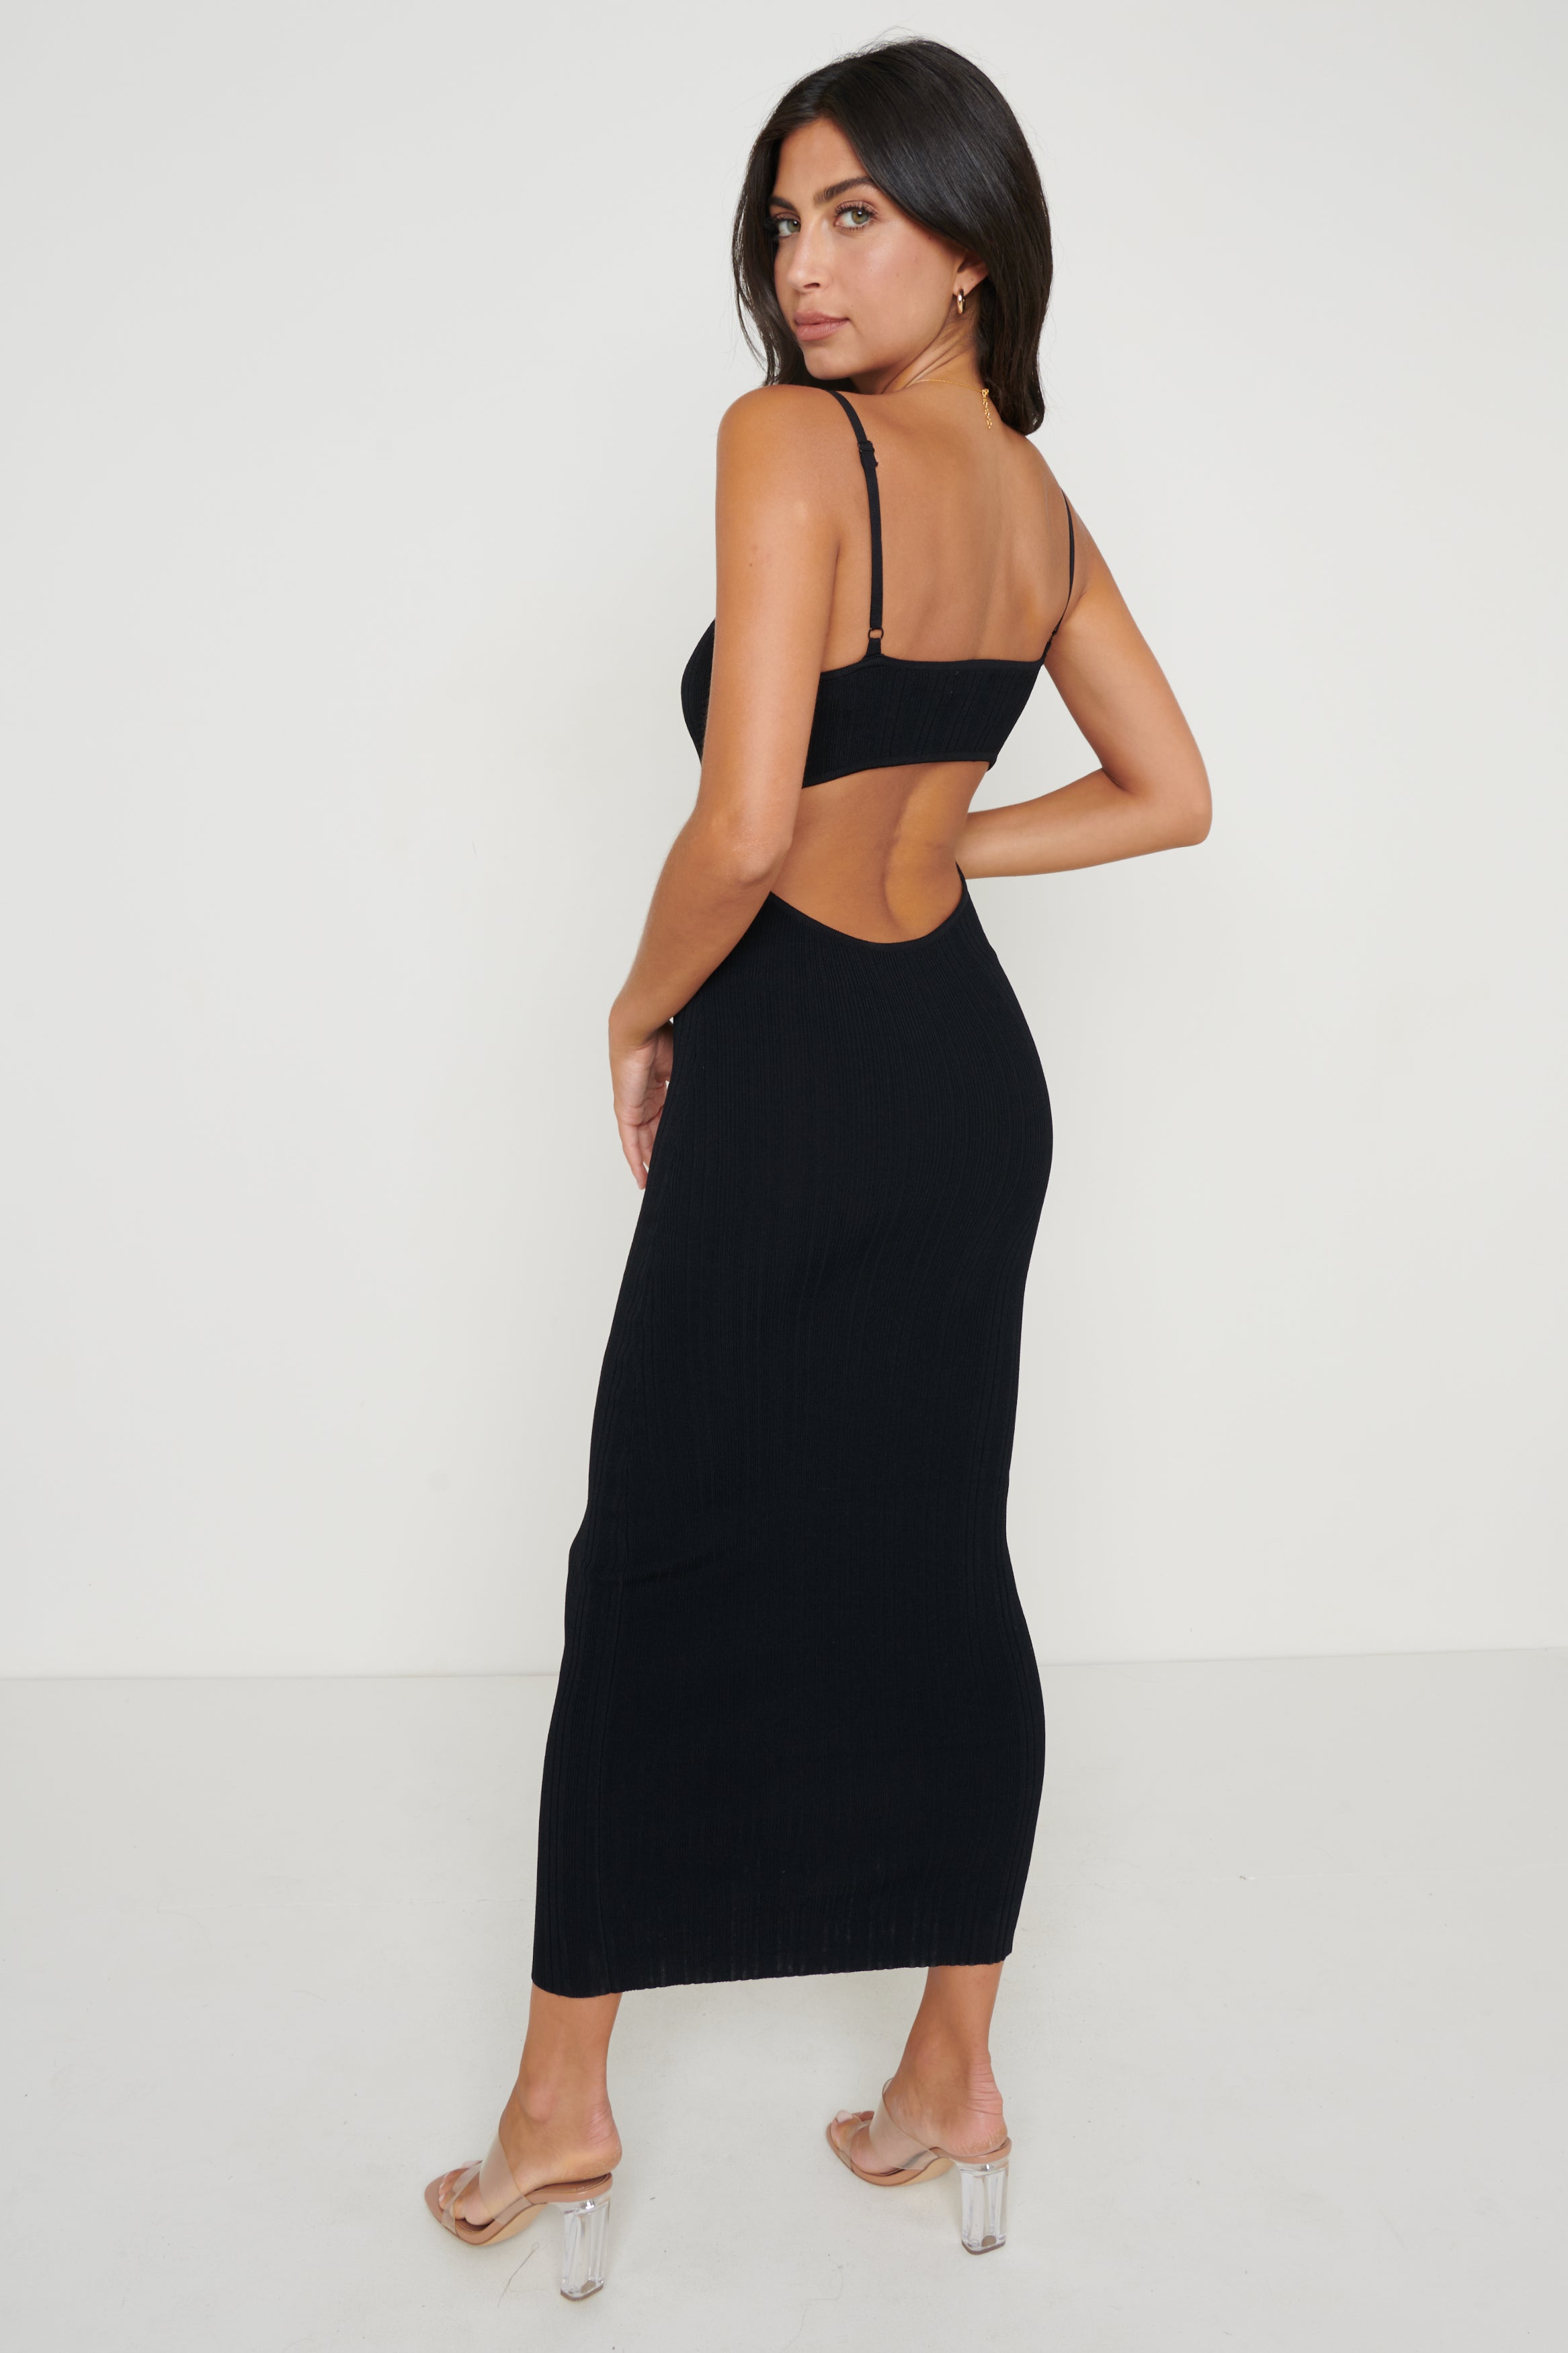 Piper Knit Dress - Black – Pretty Lavish